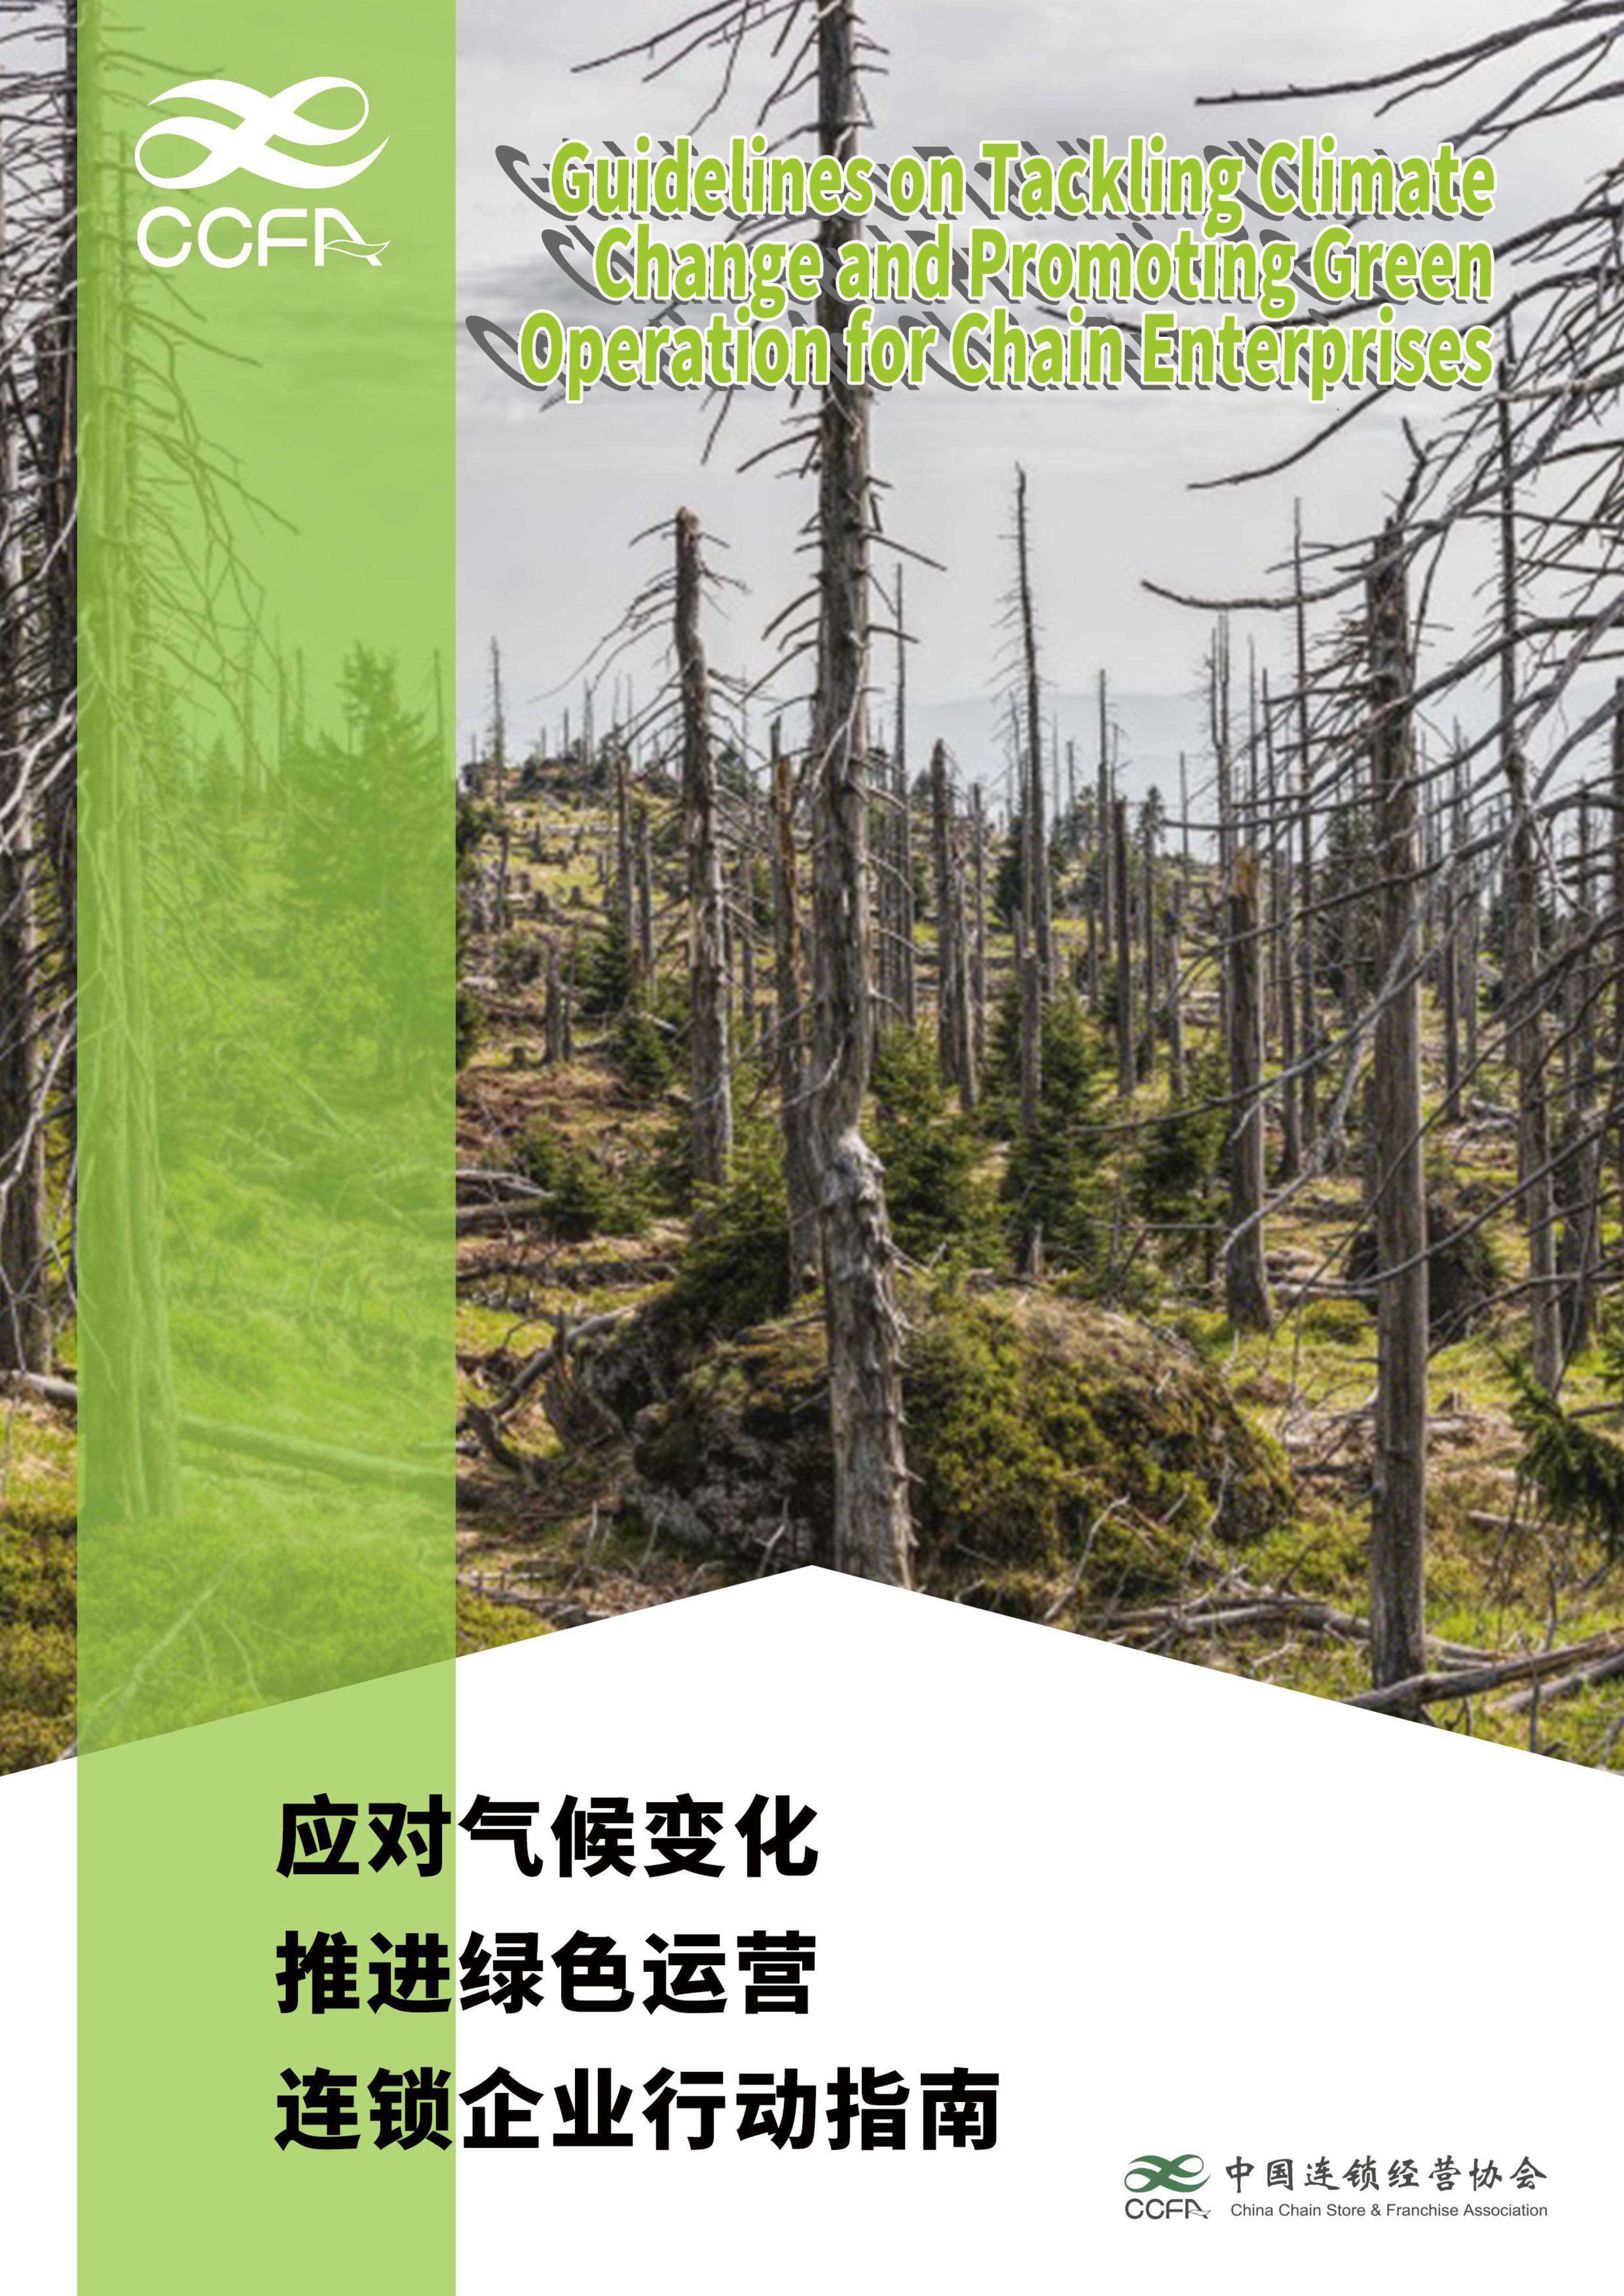 中国连锁经营协会-应对气候变化 推进绿色运营-连锁企业行动指南-2021.12-29页